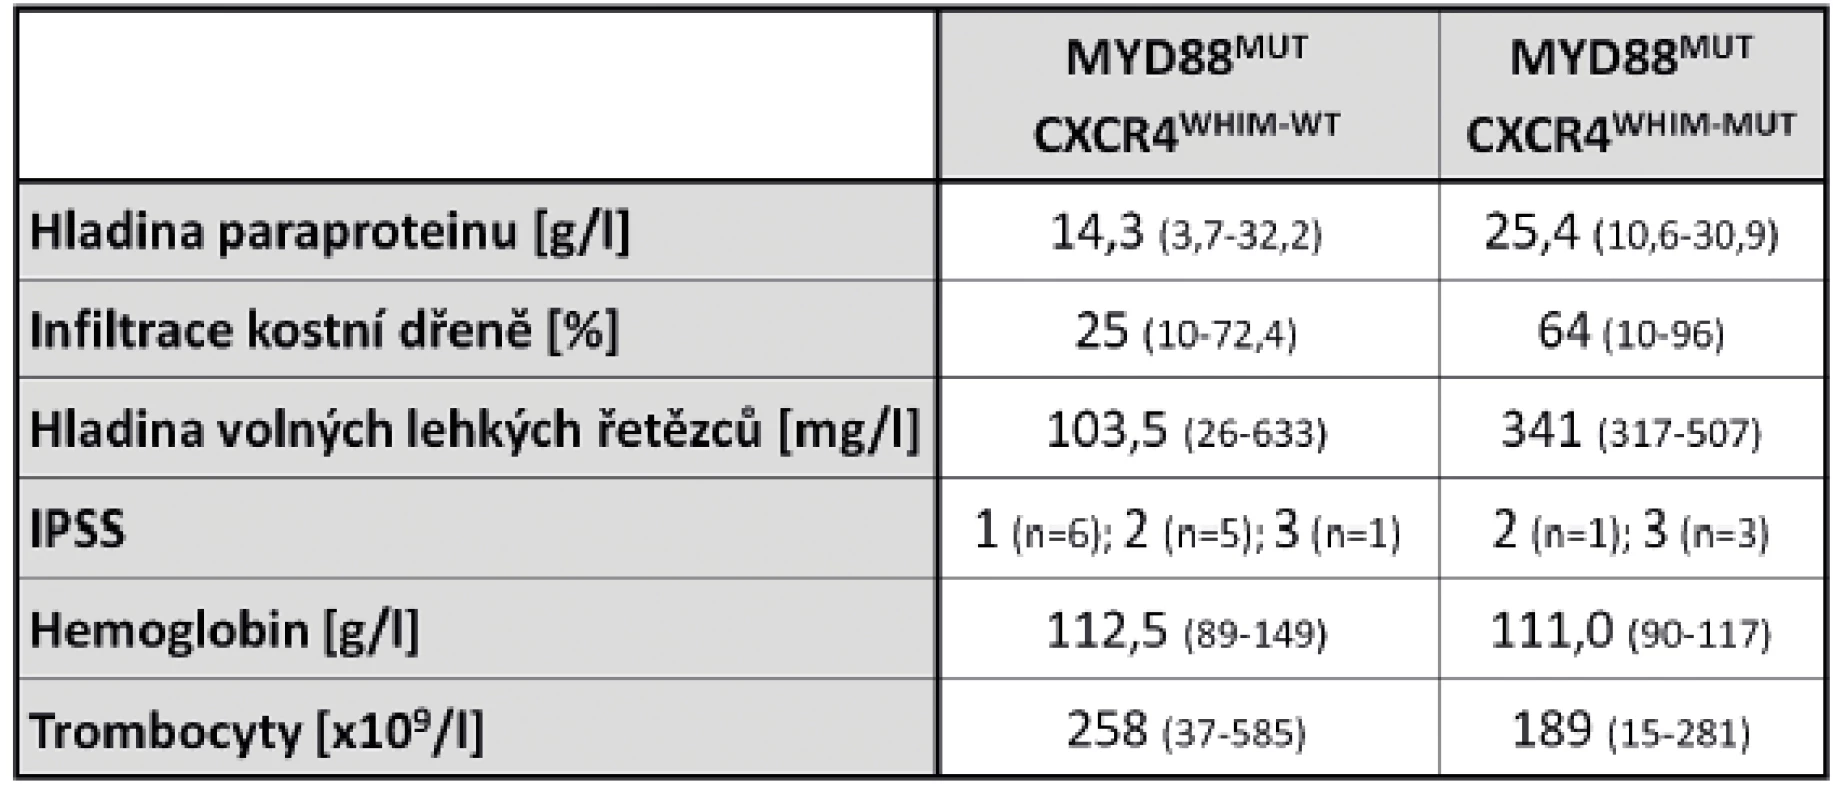 Mediány laboratorních parametrů u WM pacientů s nemutovaným a mutovaným genem CXCR4